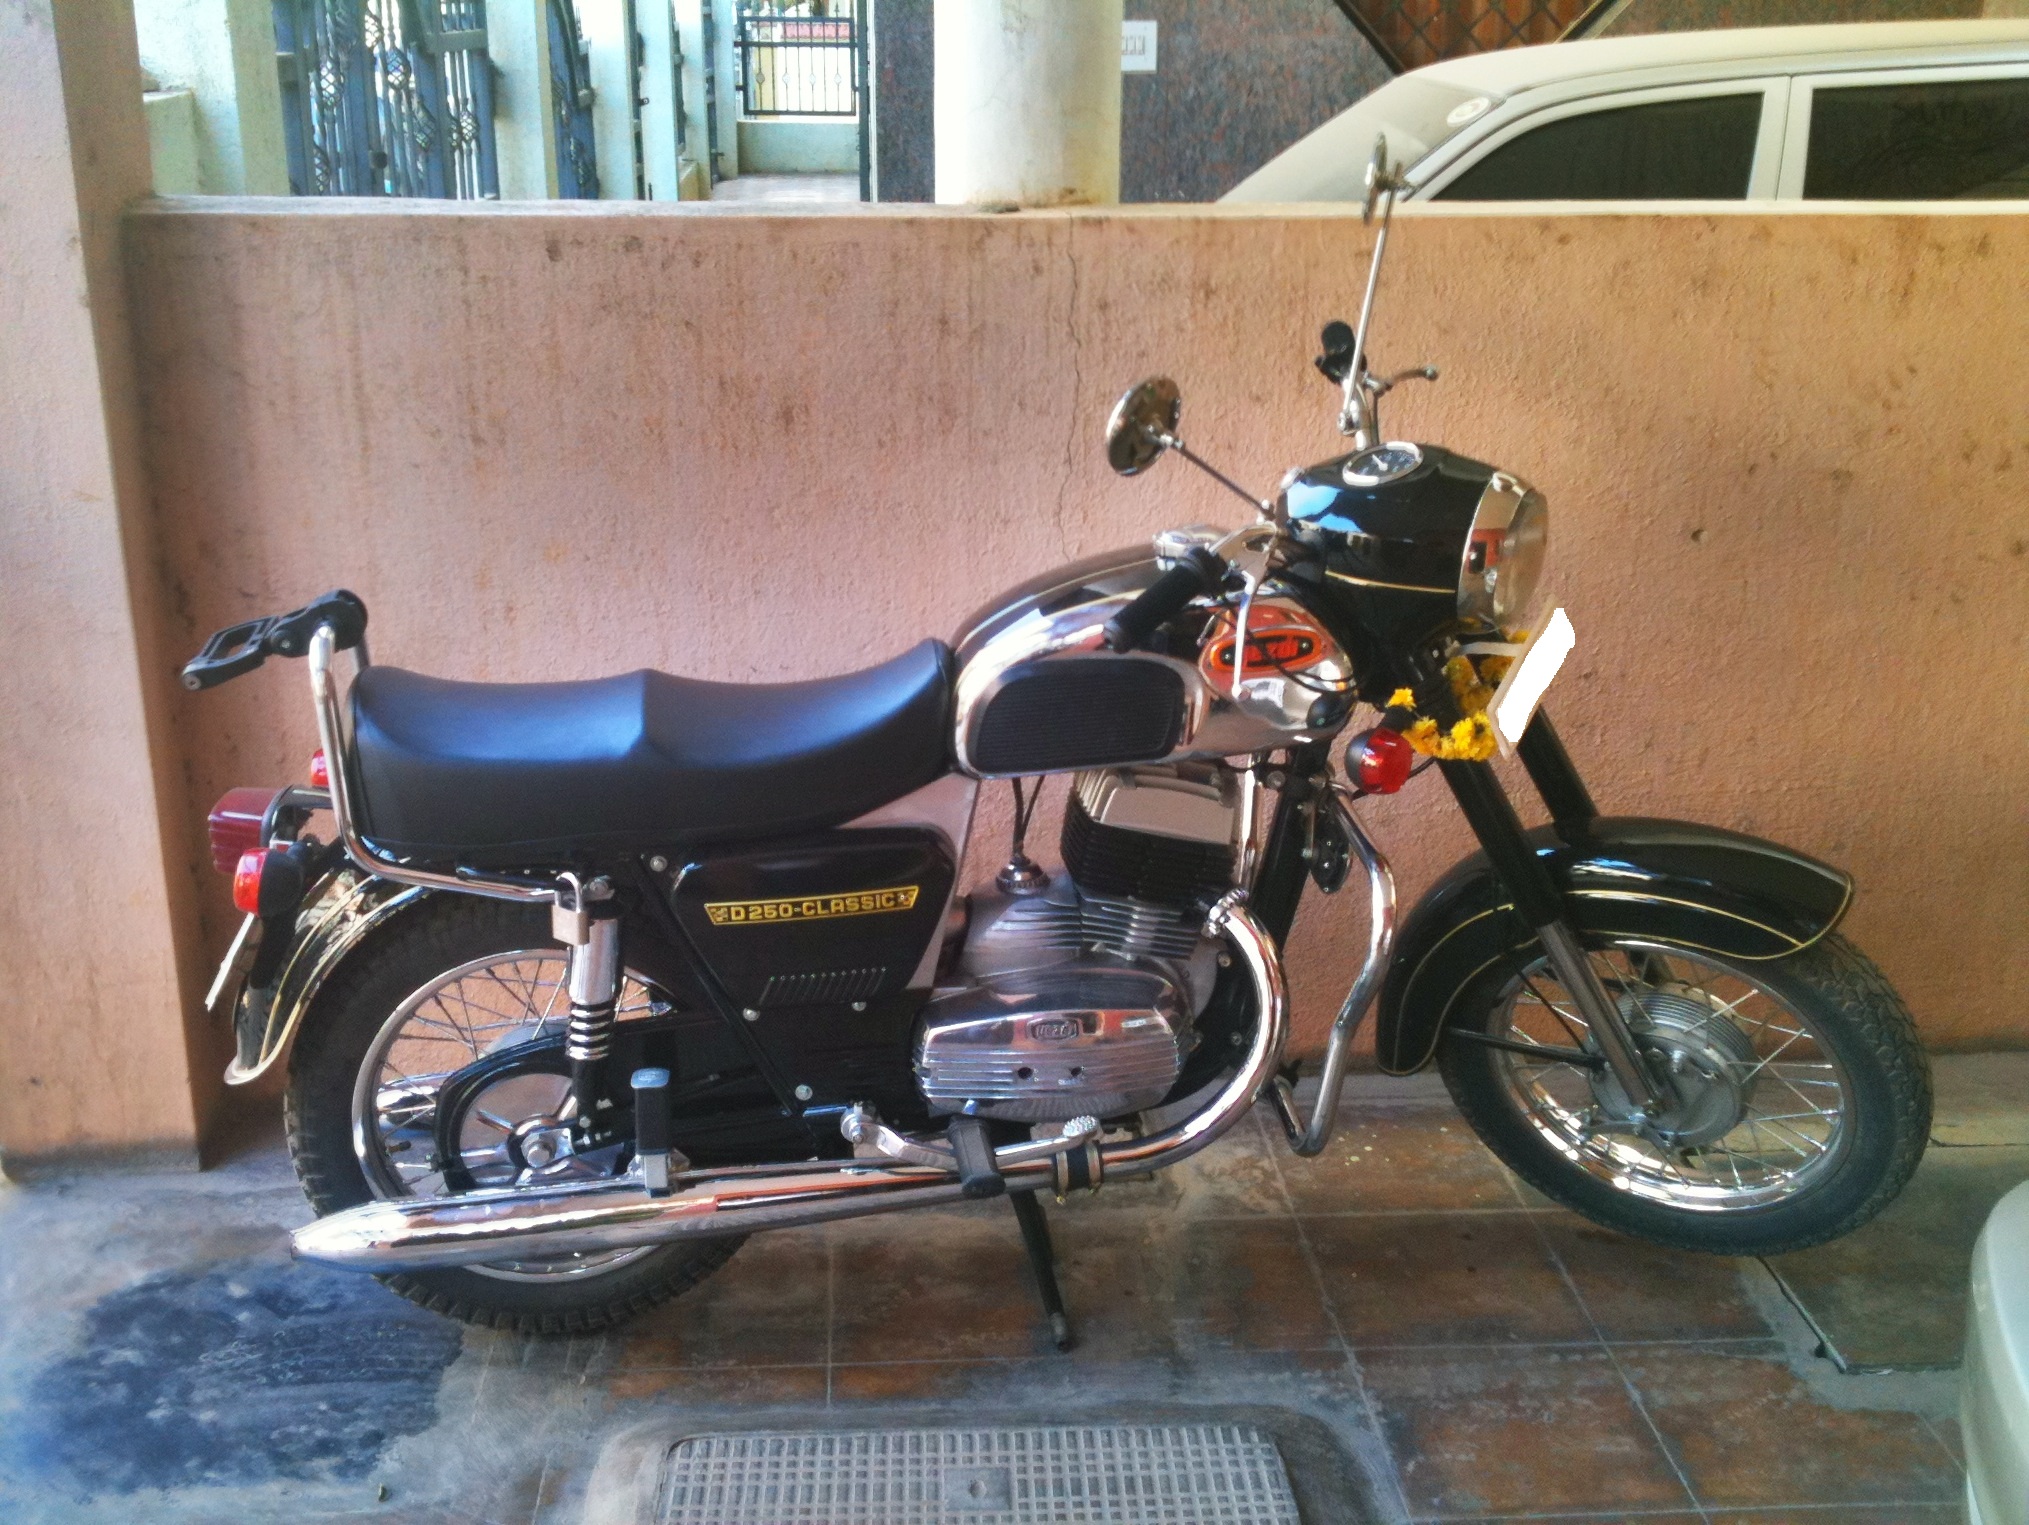 Oh ternyata produsen sepeda motor di India itu bernama &quot;Ideal Jawa&quot;! Ngakak...